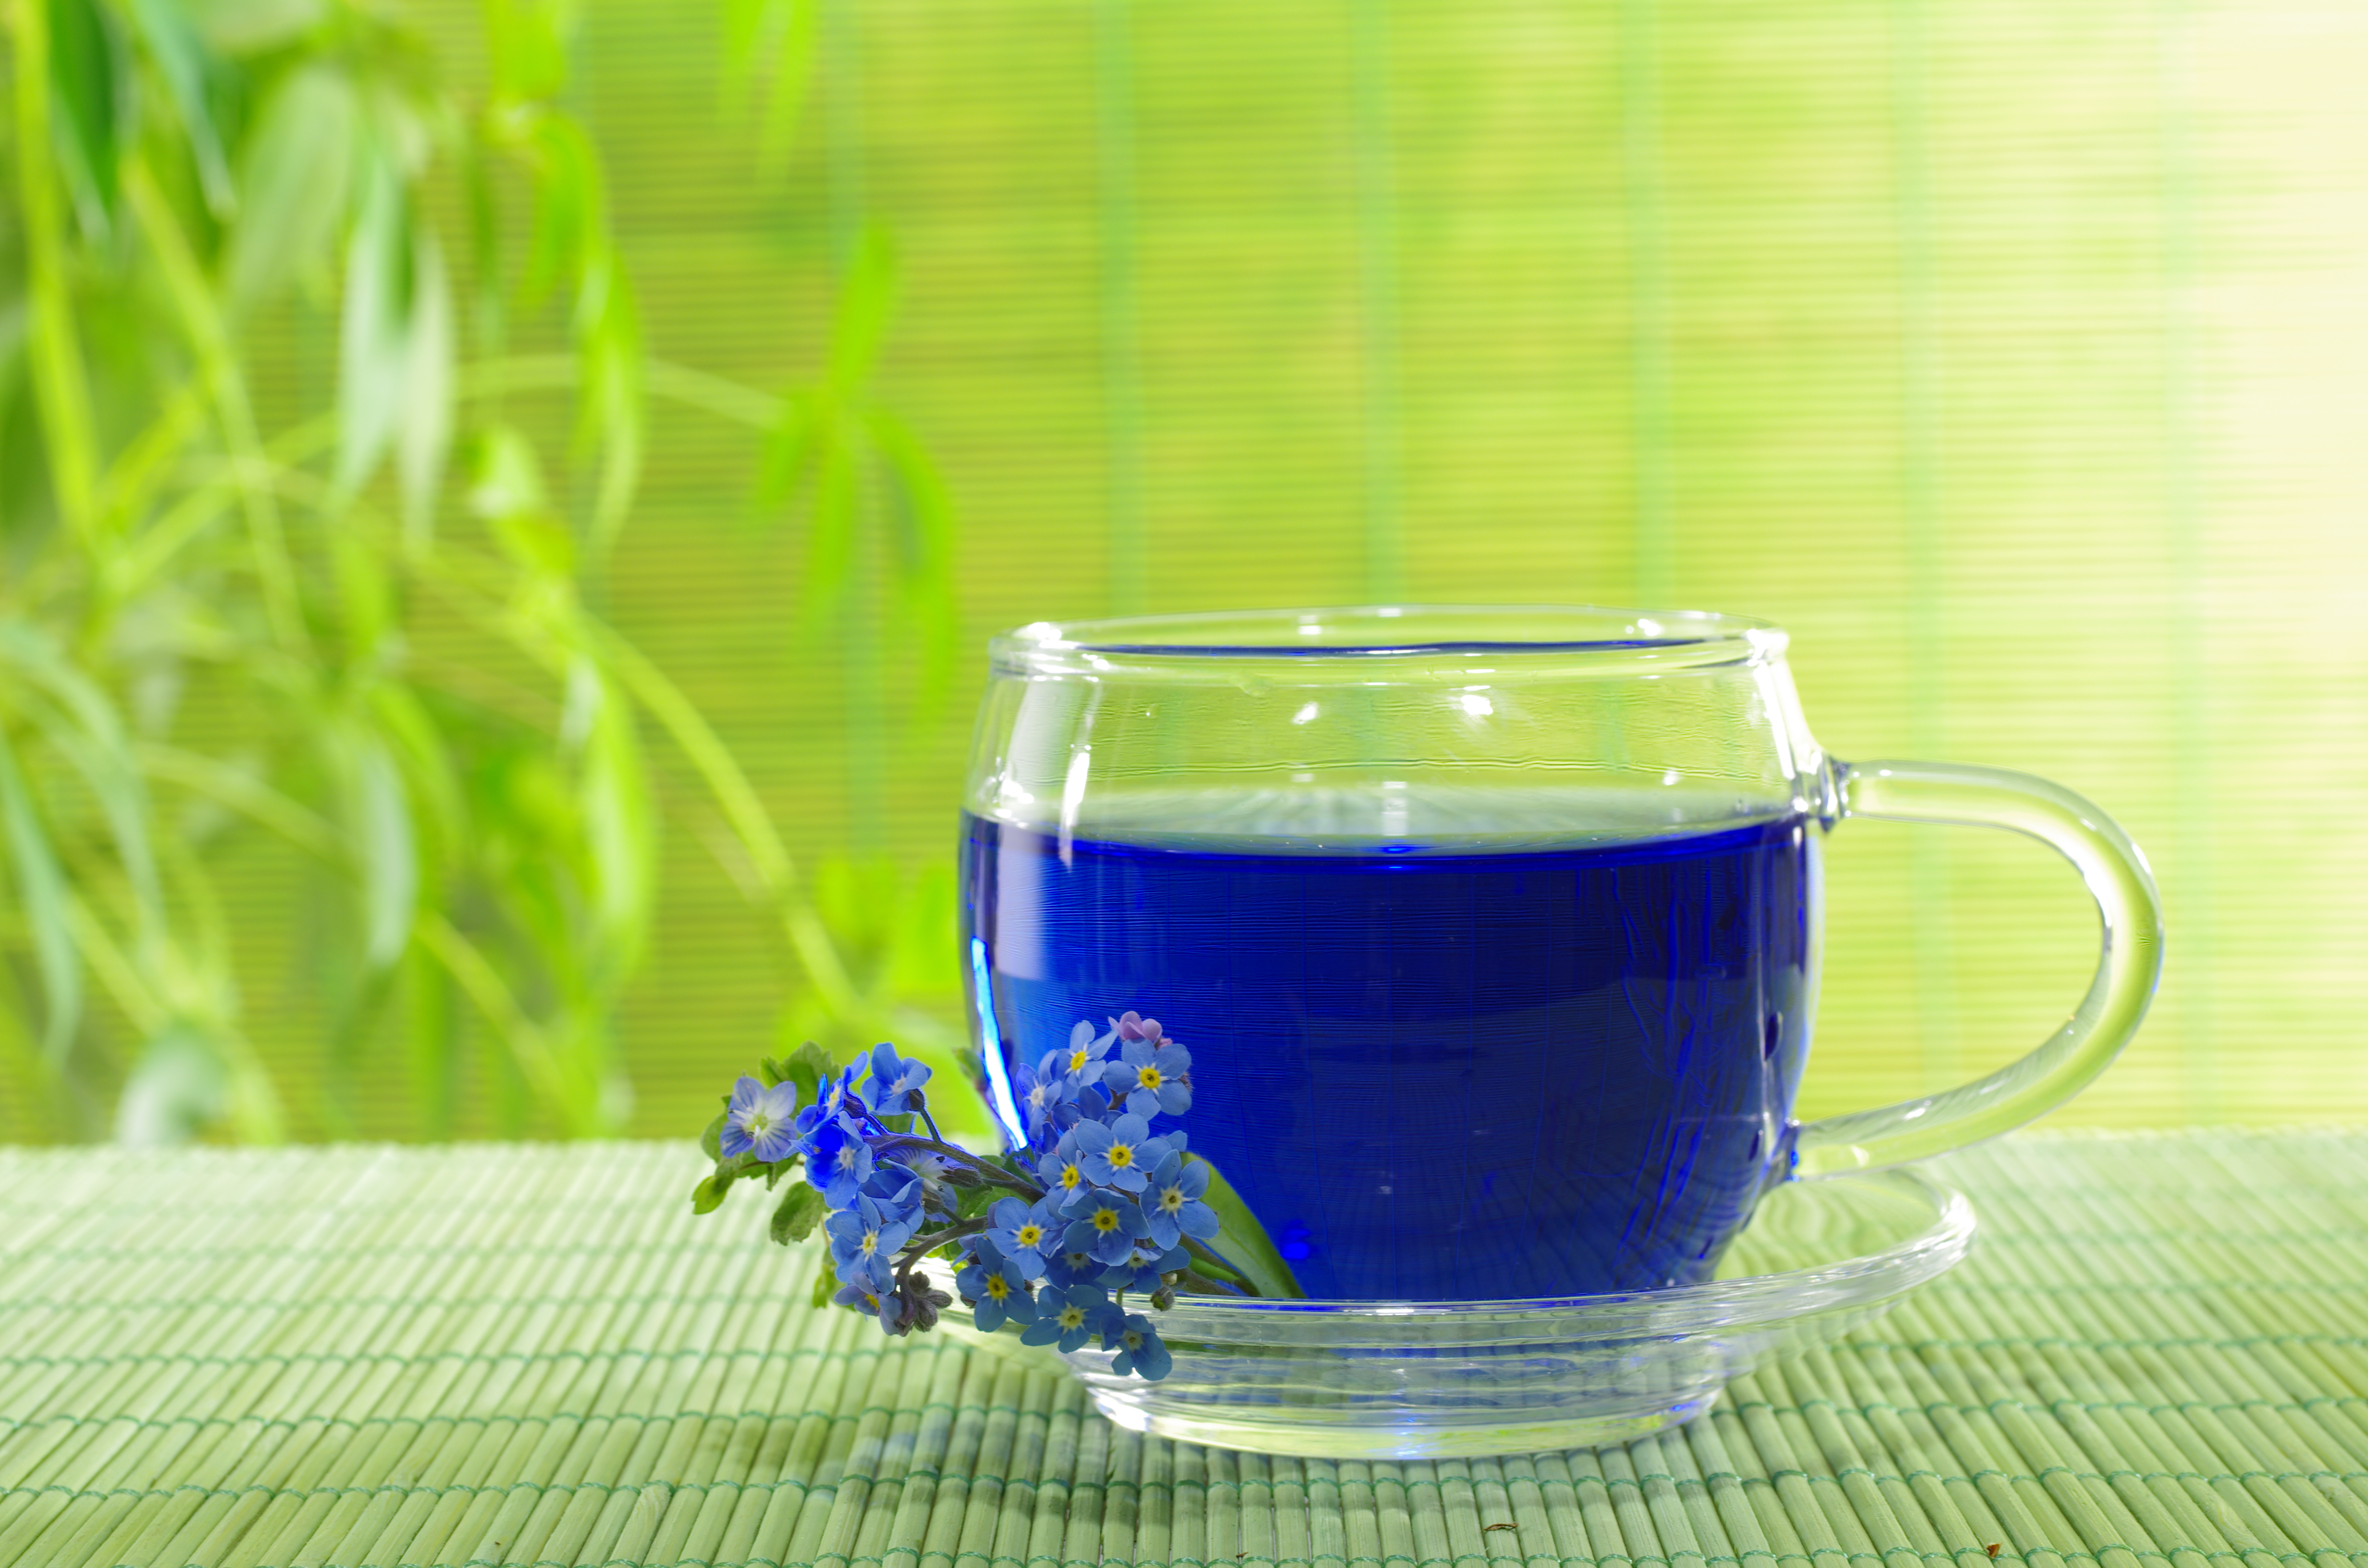 Синий чай из таиланда: все о полезных свойствах и как заваривать - туристический портал